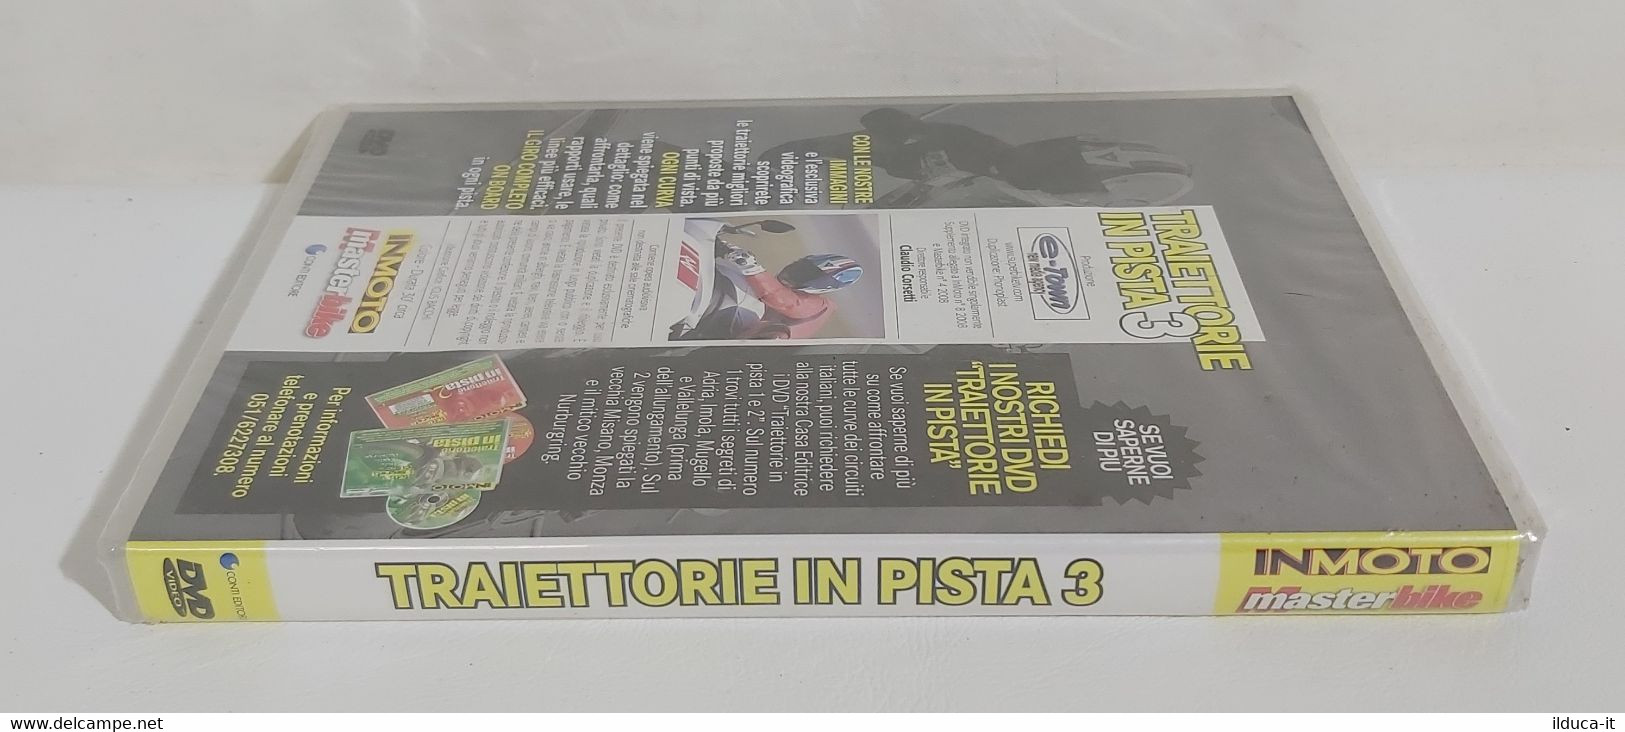 I104056 DVD - Traiettorie In Pista 3 - In Moto / Masterbike - Sigillato - Sports